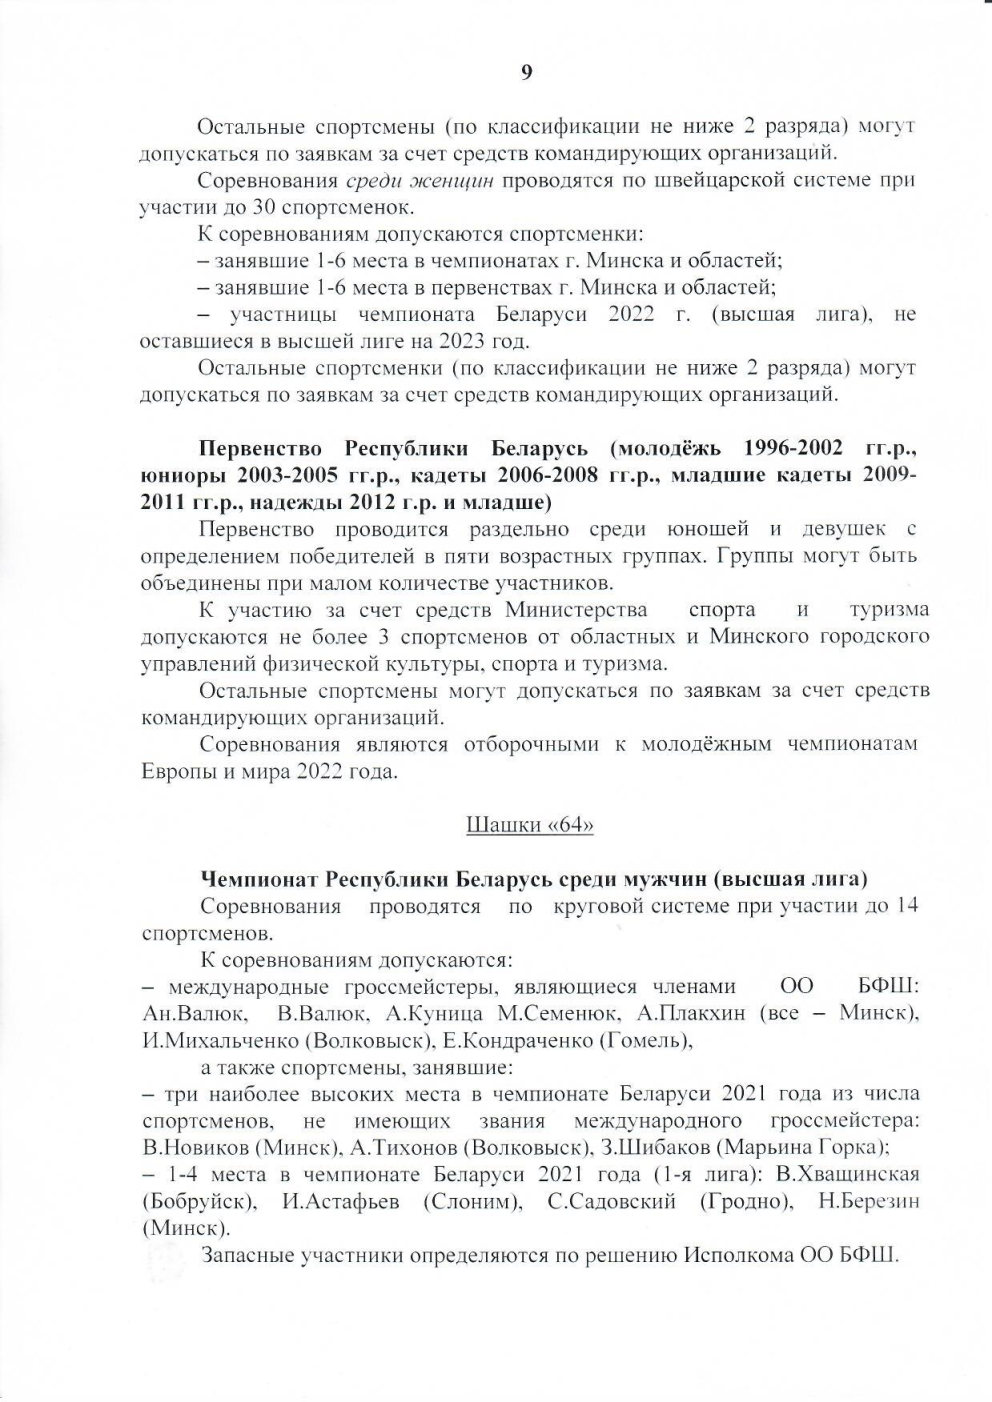 ШАШКИ 2022 Page9